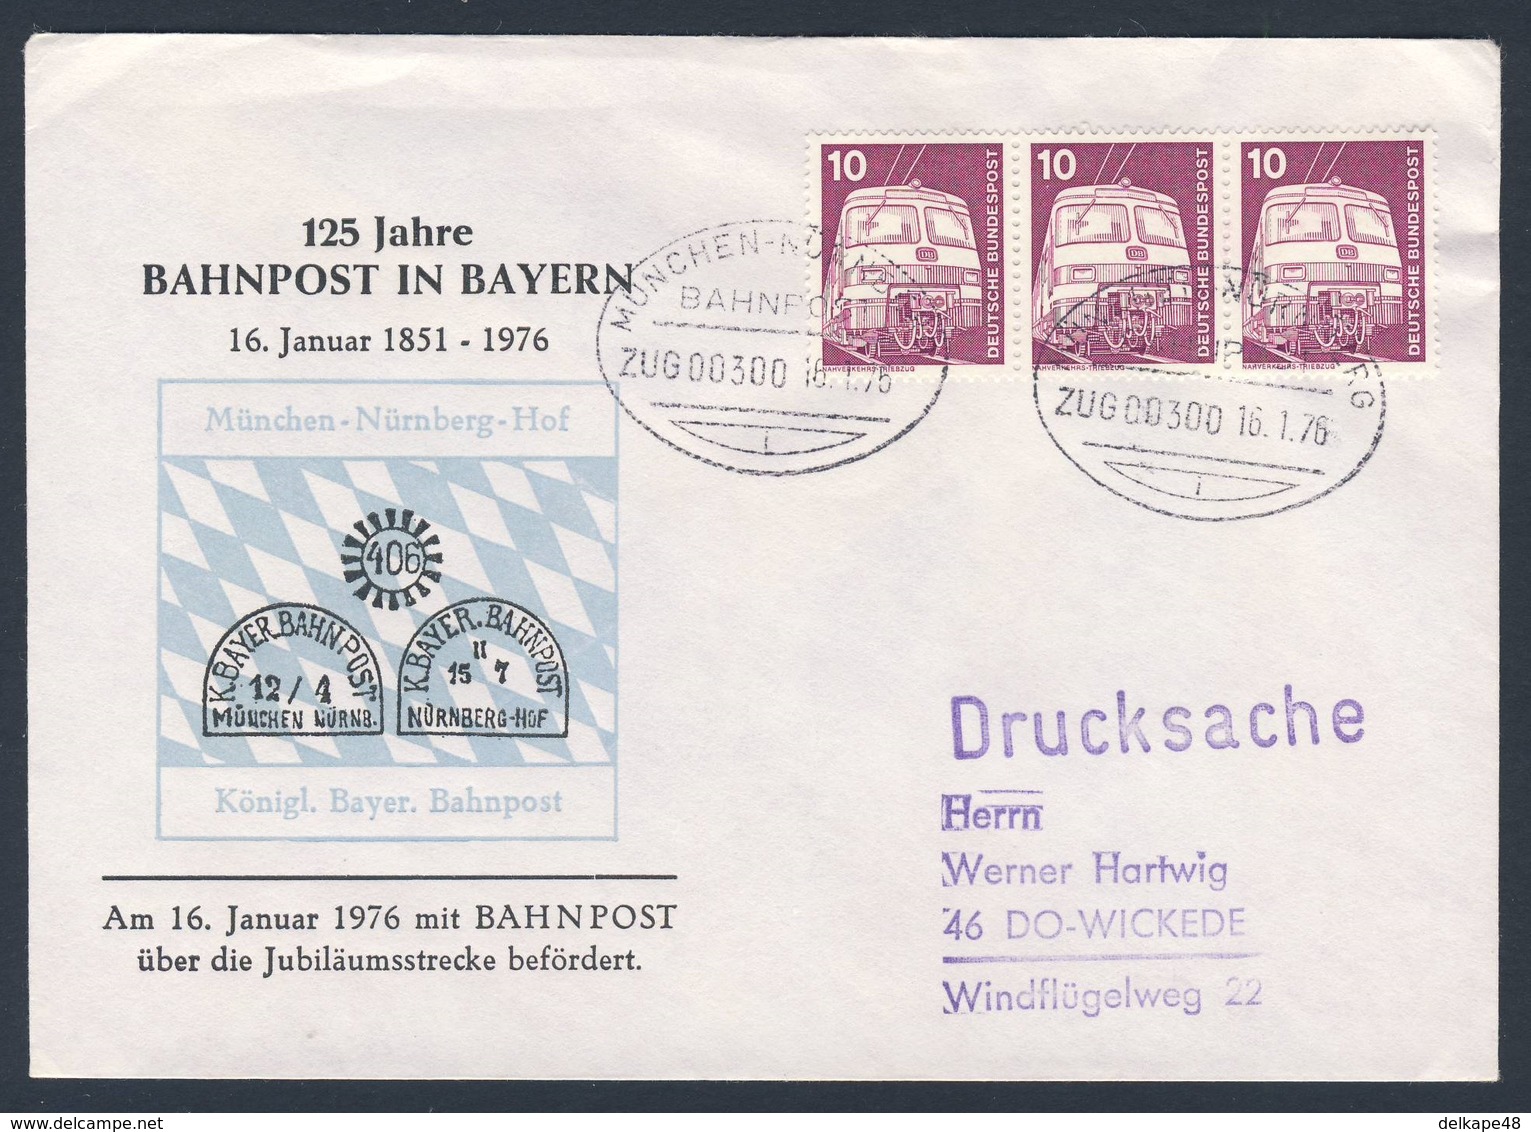 Deutschland Germany 1976 Brief Cover - 125 Jahre Bahnpost In Bayern - 1851 - 1976 - ZUG 00300 Bahnpost München-Nürnberg - Treinen